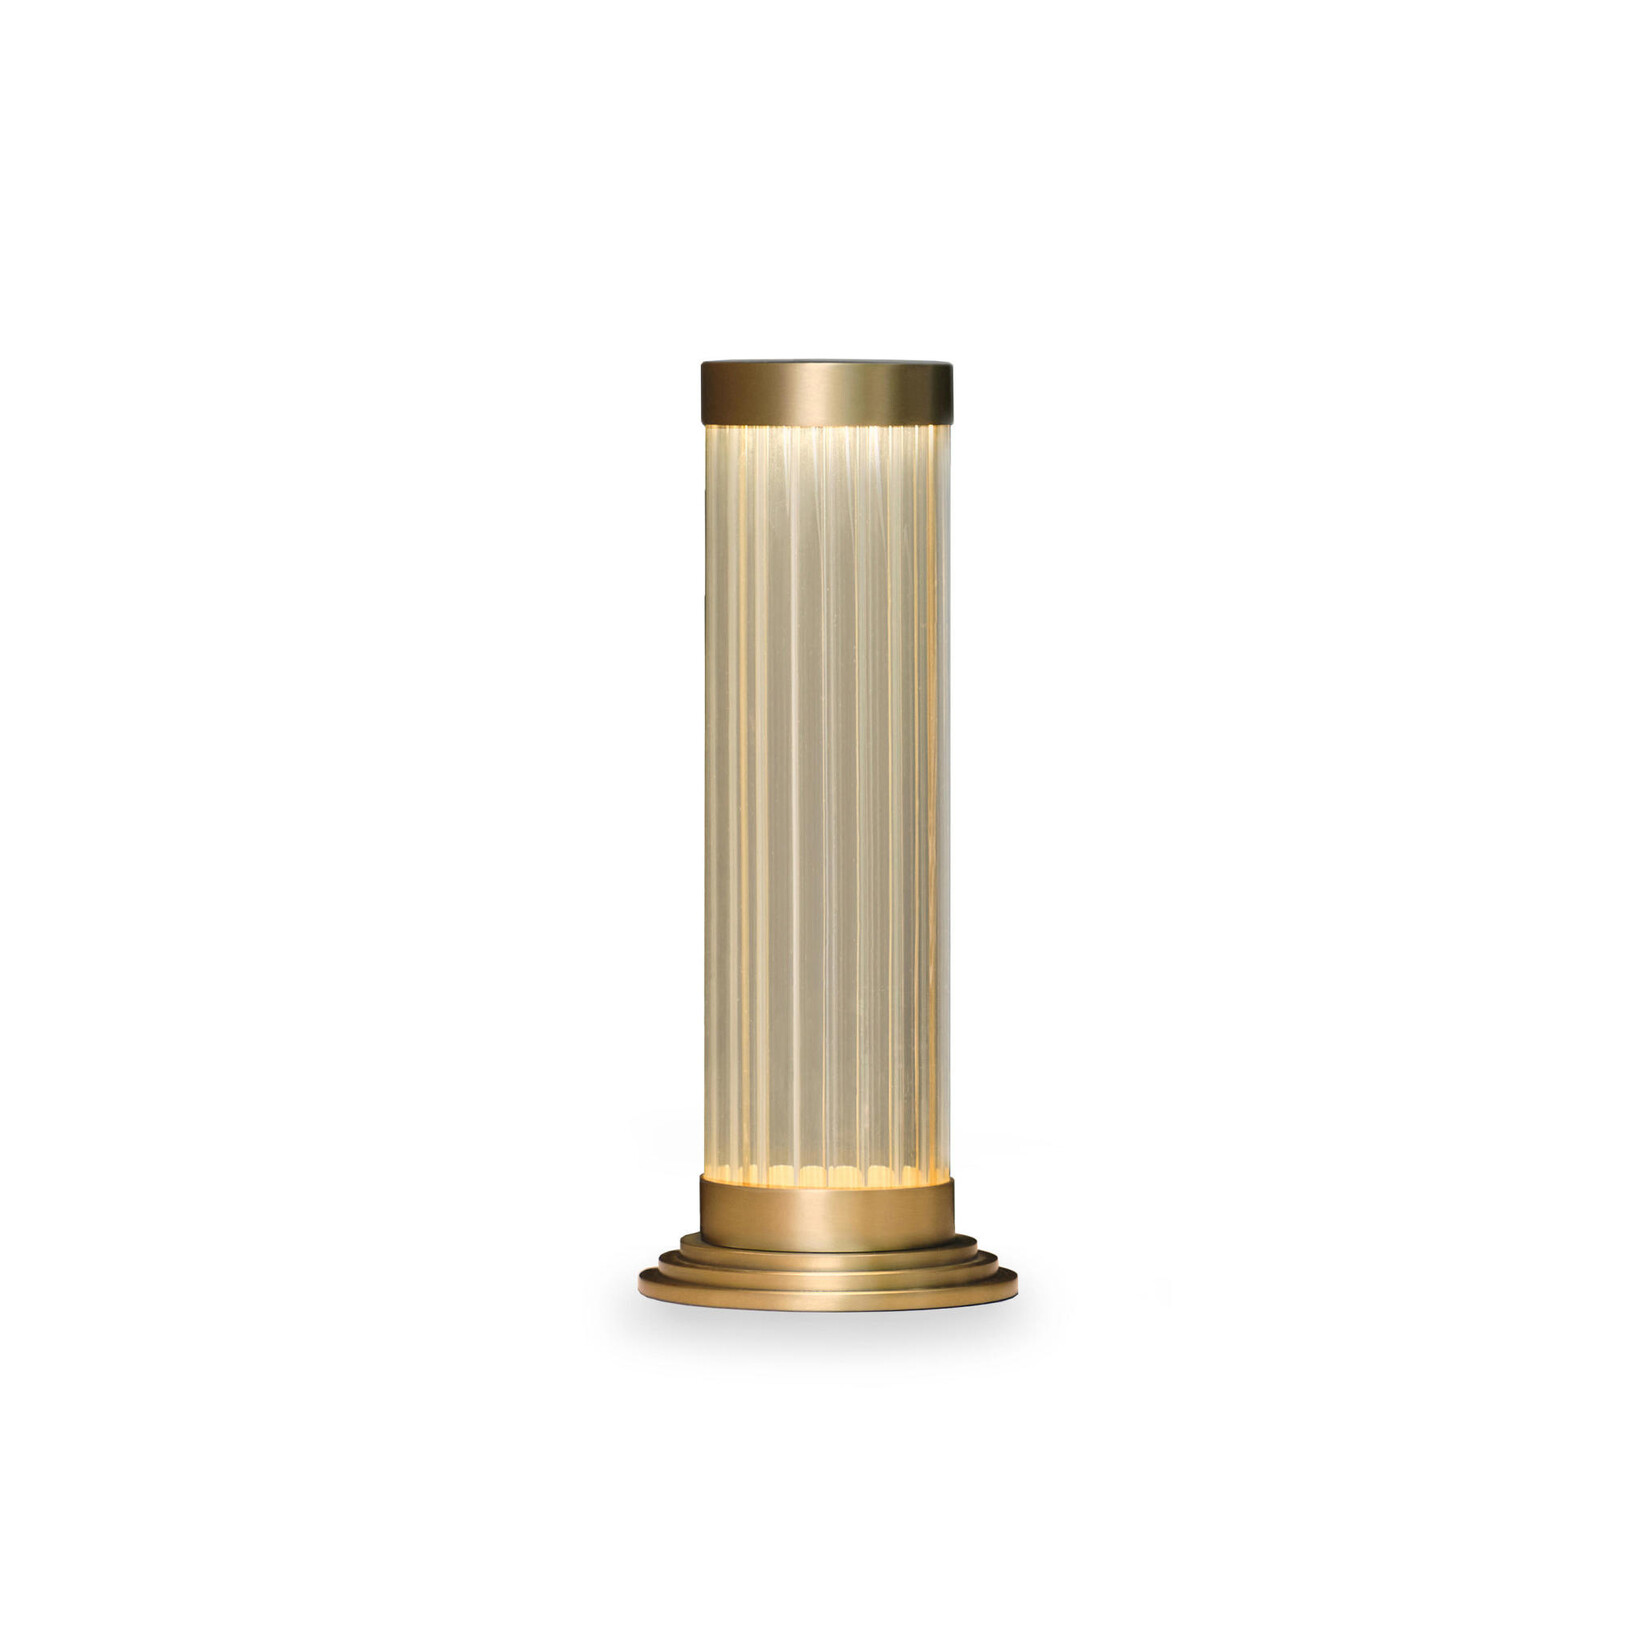 Porto Tischlampe Antique Brass Ø110 x H260mm